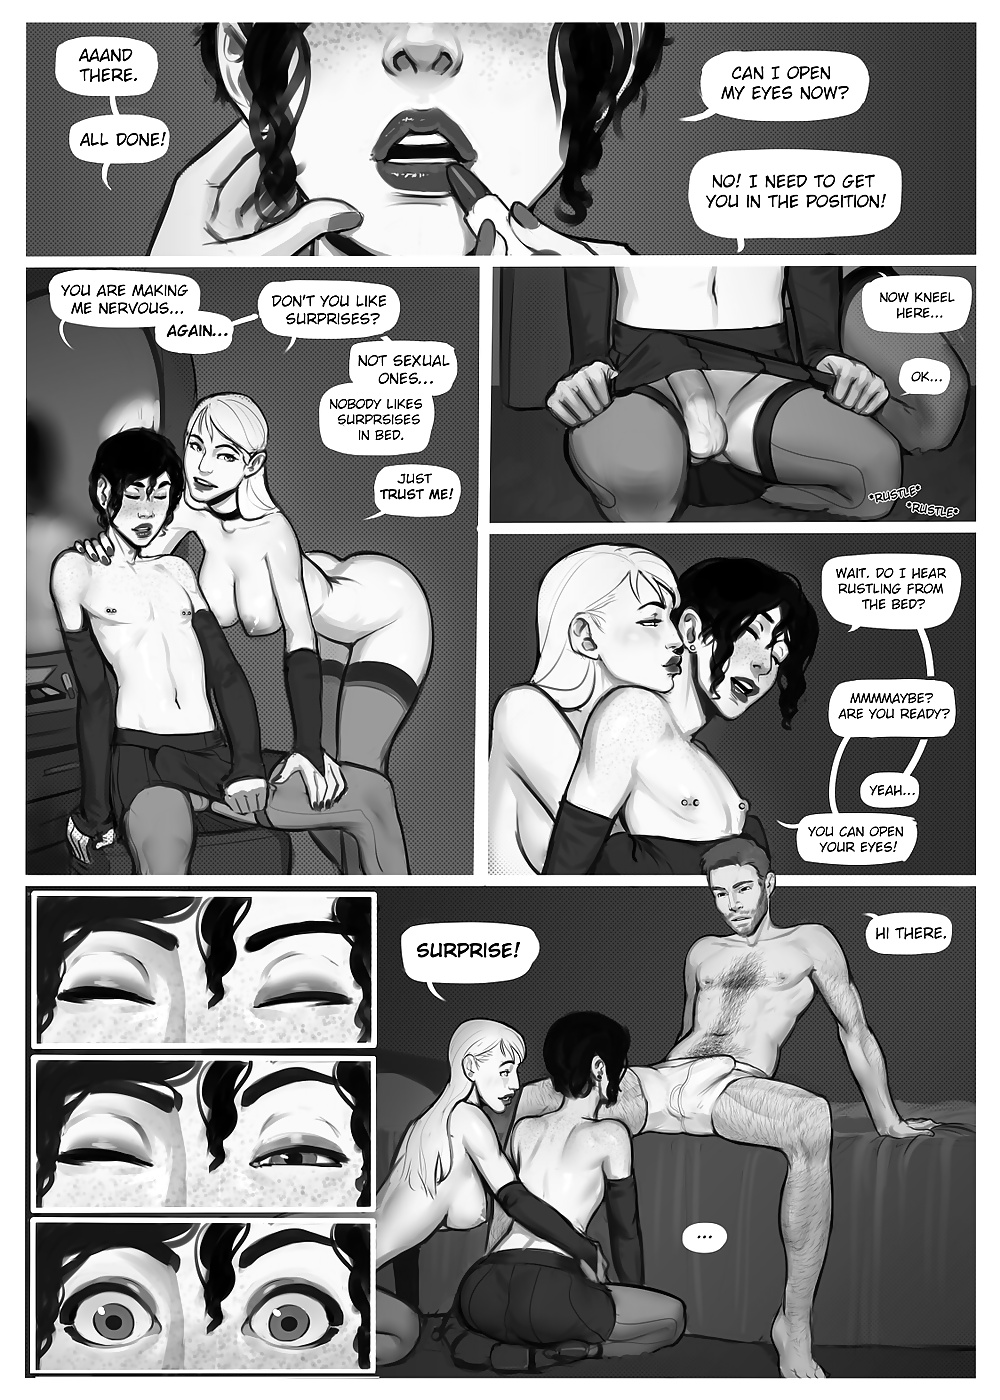 Comico bi trap molto sexy che ho trovato in rete.
 #26568036